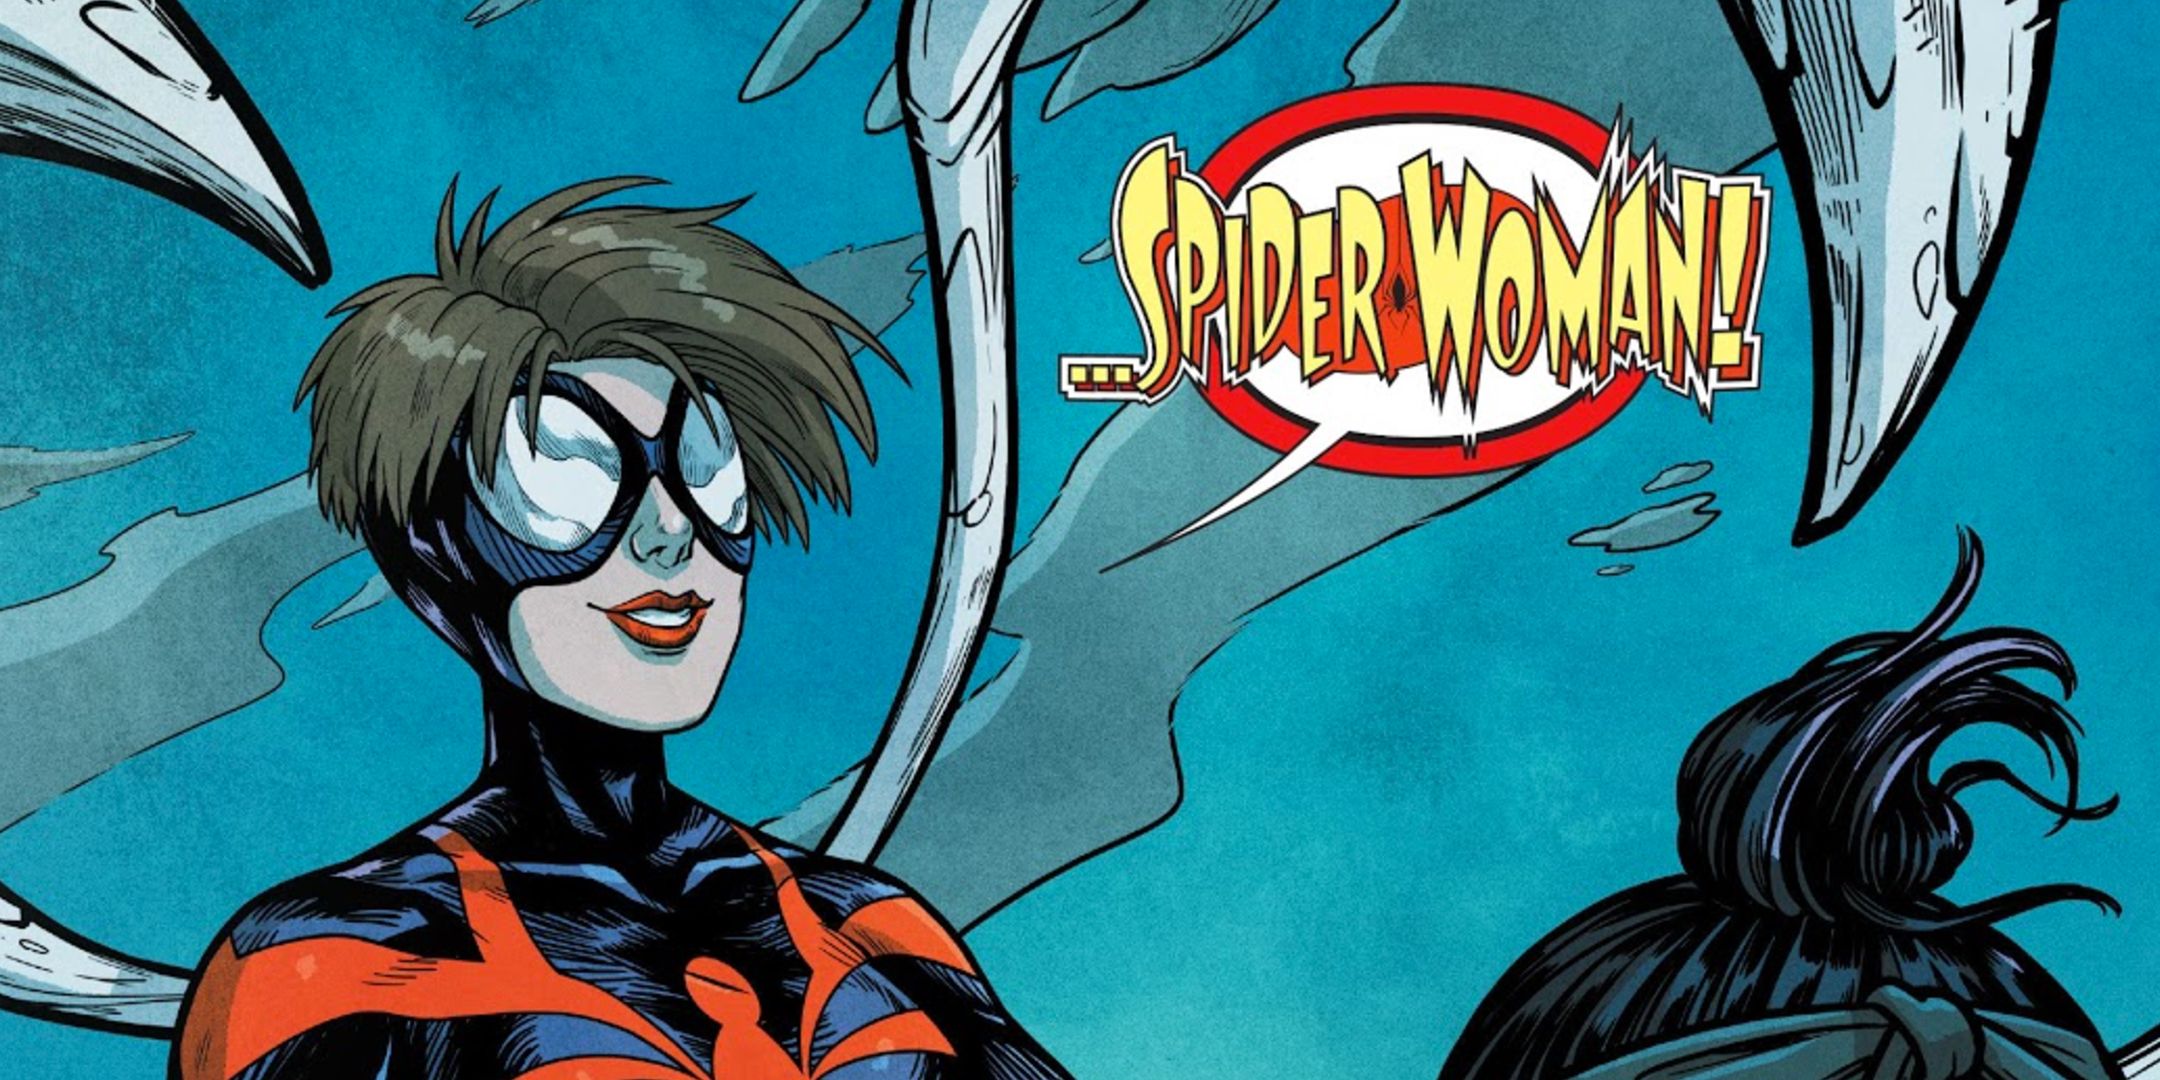 Spider-Woman Mattie Franklin in Silk